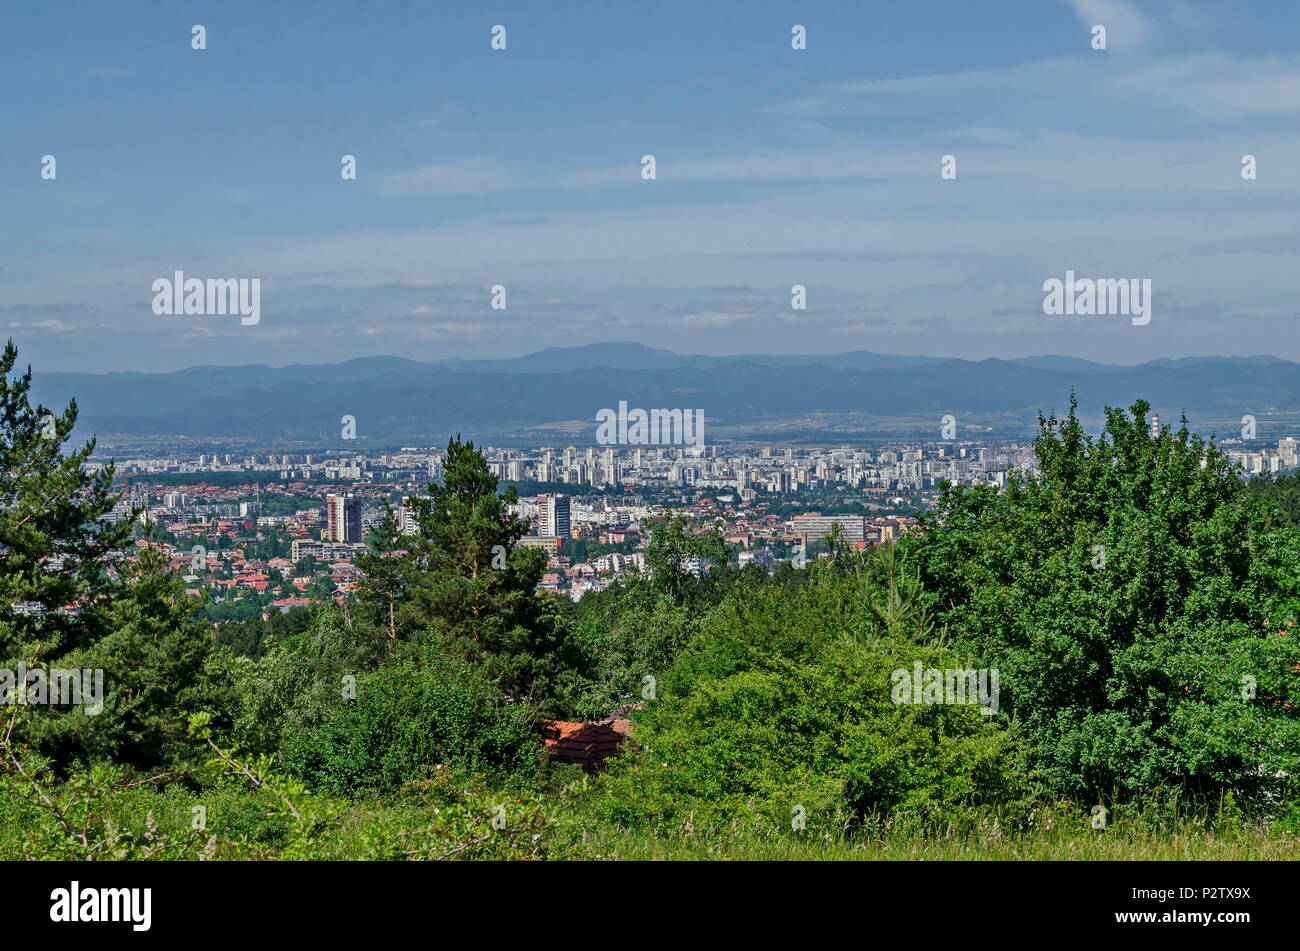 Cityscape of bulgarian capital city Sofia from the top of Vitosha mountain near by Knyazhevo, Sofia, Bulgaria, Europe Stock Photo